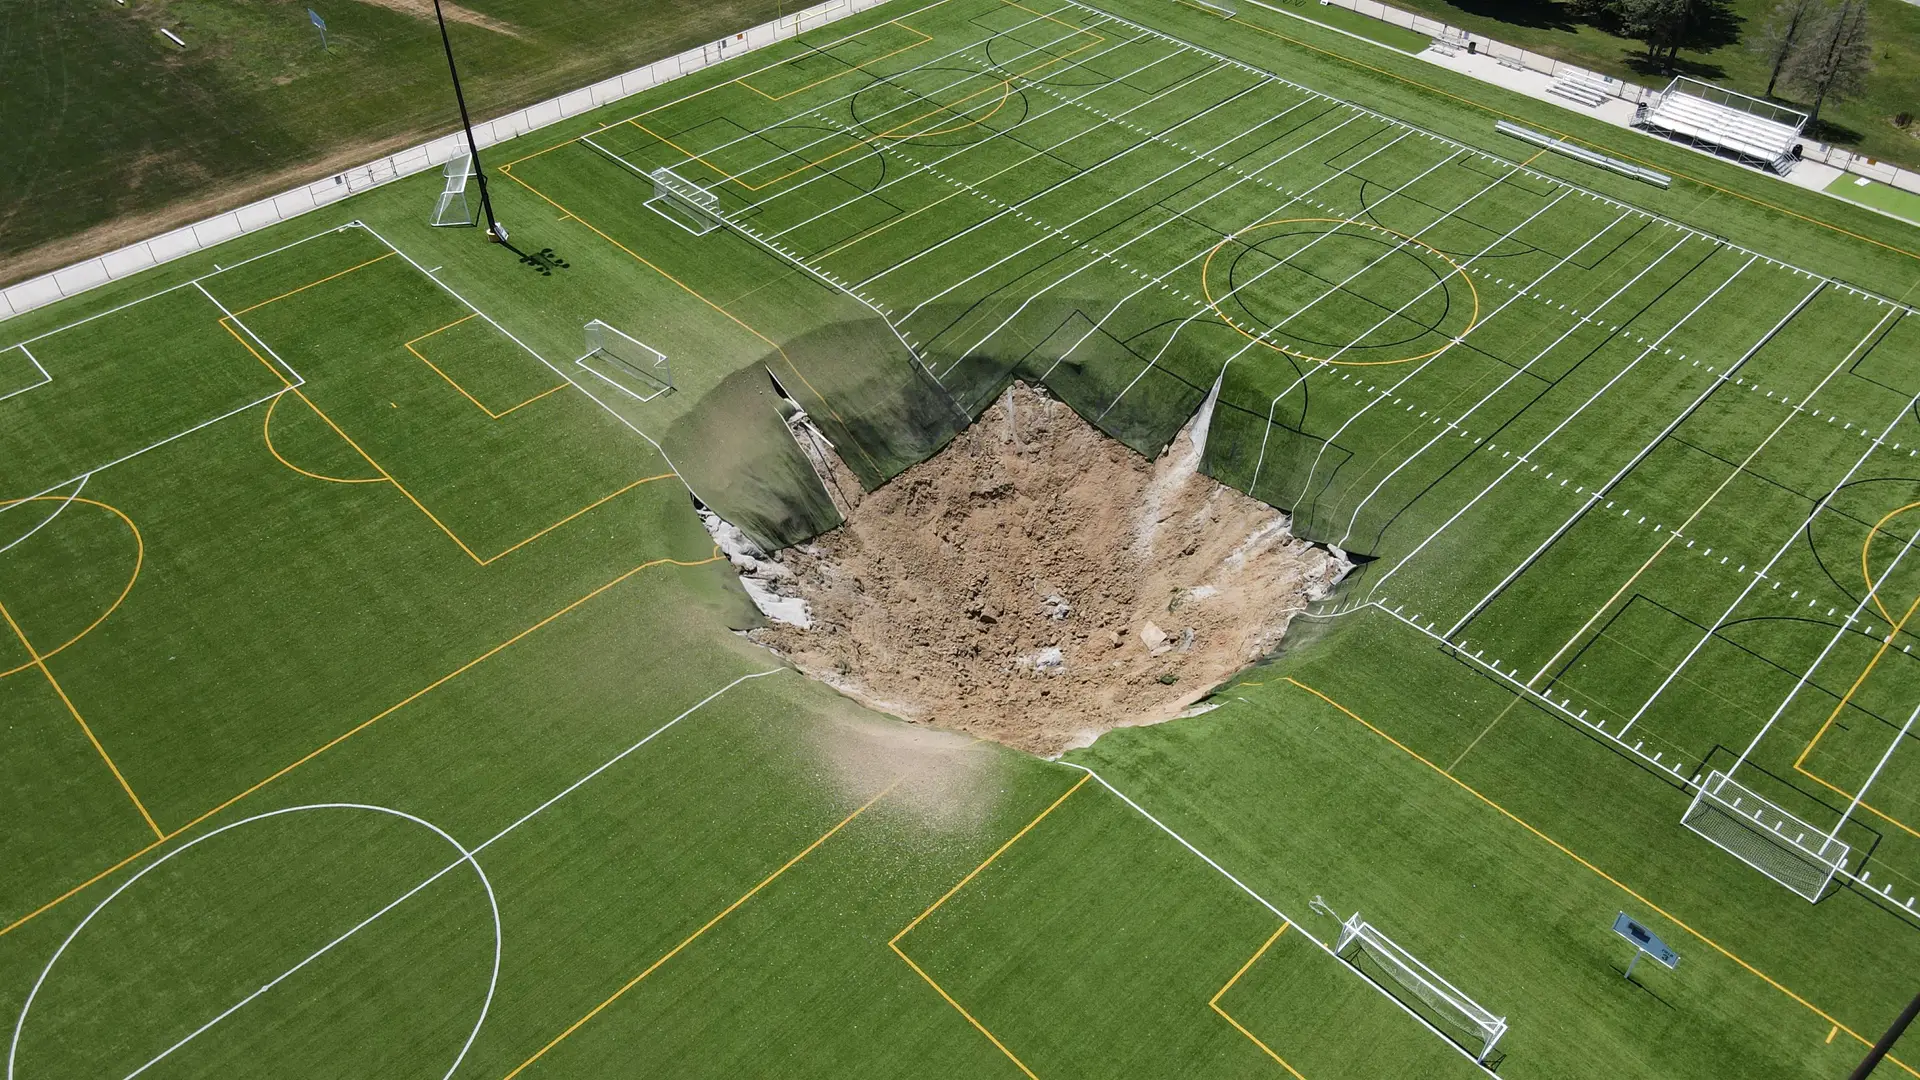 Vea el momento: aparece un agujero gigante en un campo de fútbol y se traga un poste de luz en Estados Unidos